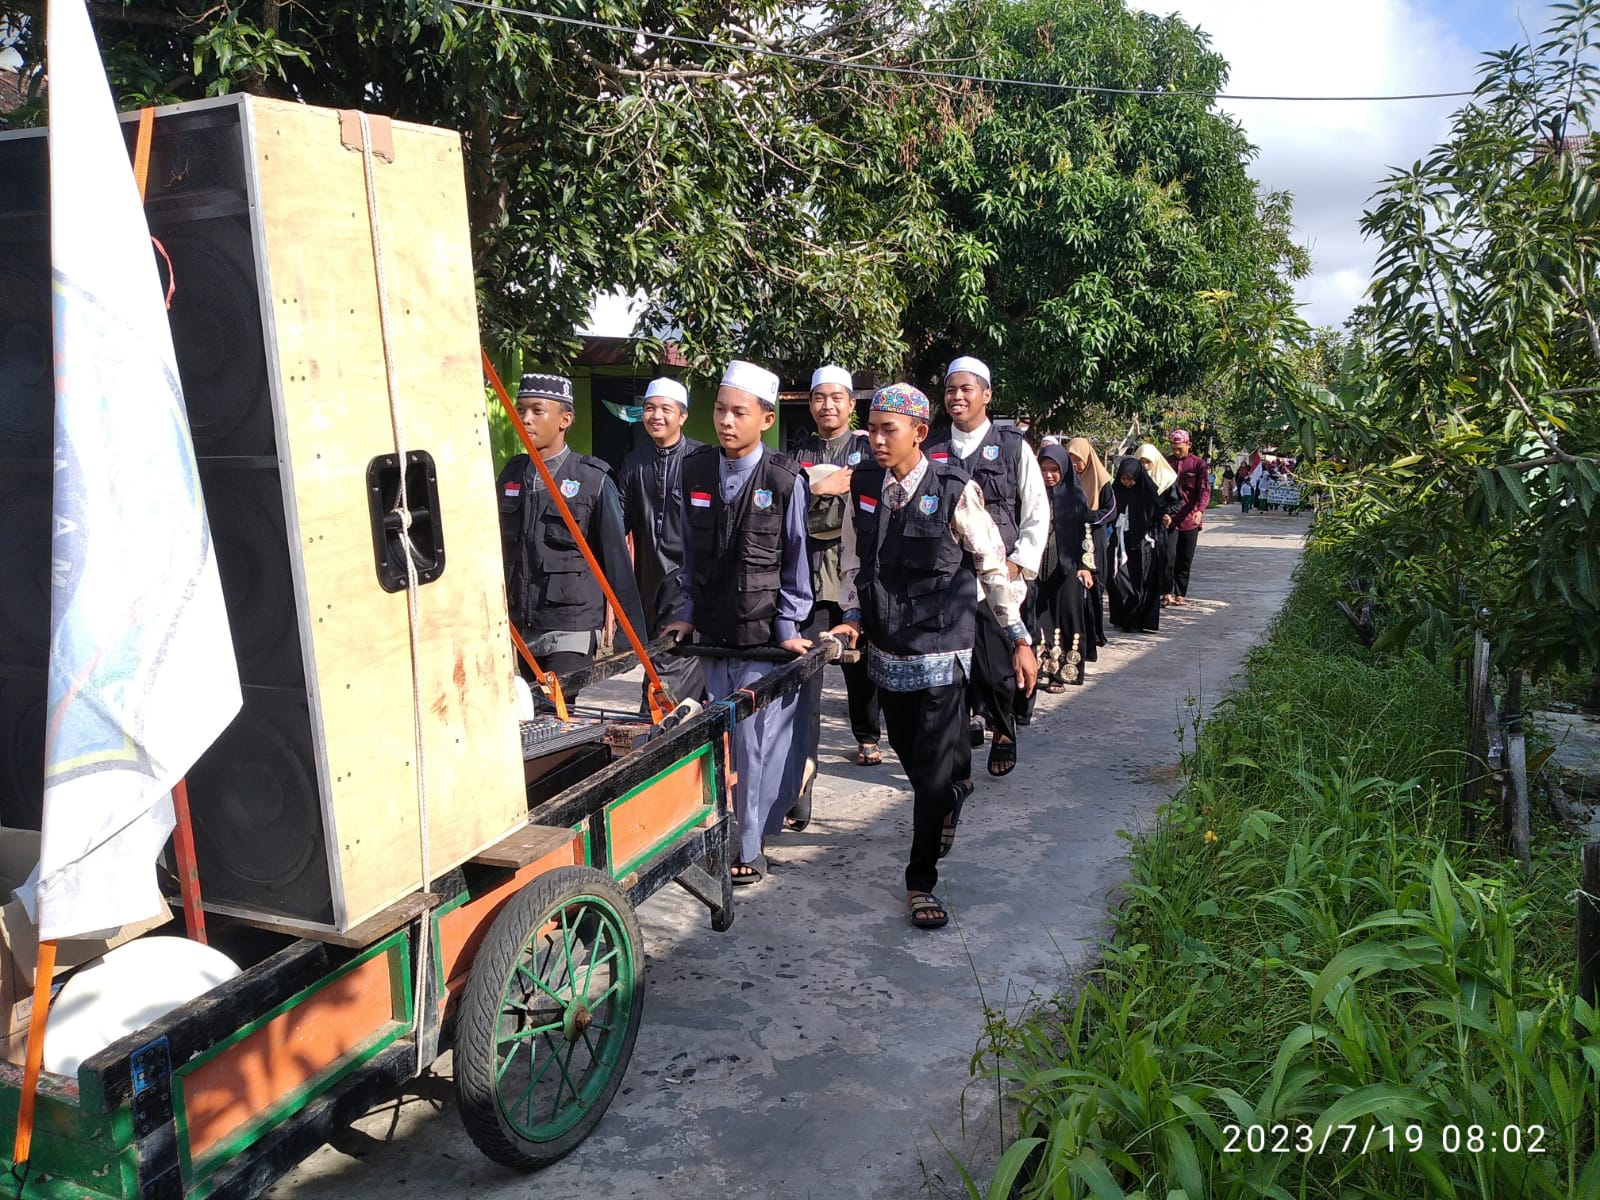 Warga Kecamatan Katingan Kuala Kabupaten Katingan Kalimantan Tengah Menyambut Tahun Baru Islam 1 Muharram 1445 H / 2023 M Penuh Suka Cita.